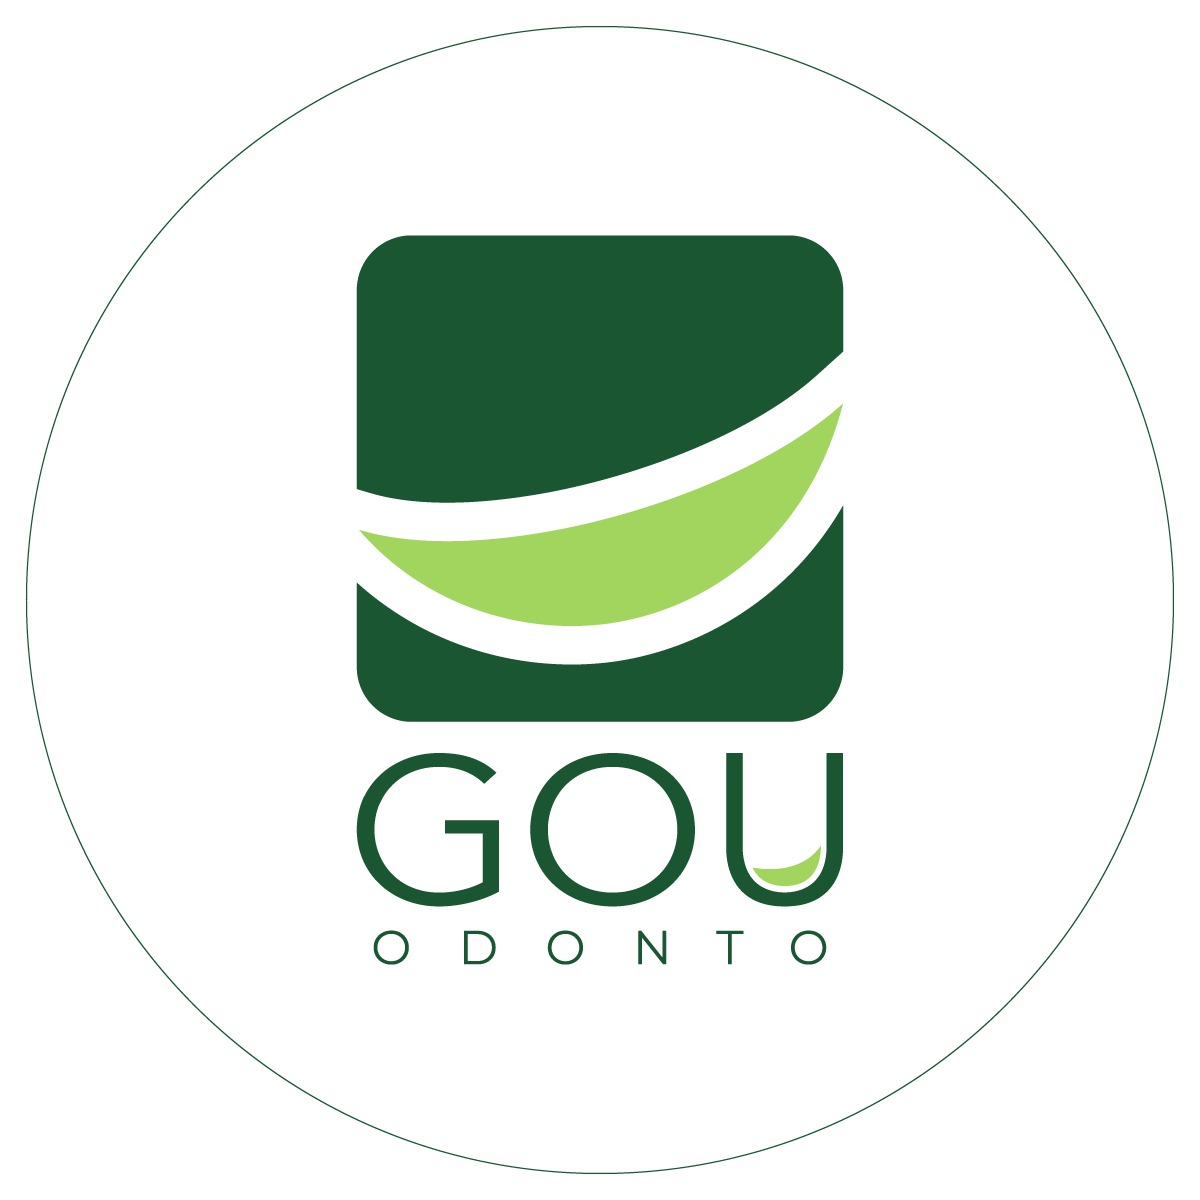 GOU ODONTO - Clínicas De Odontologia